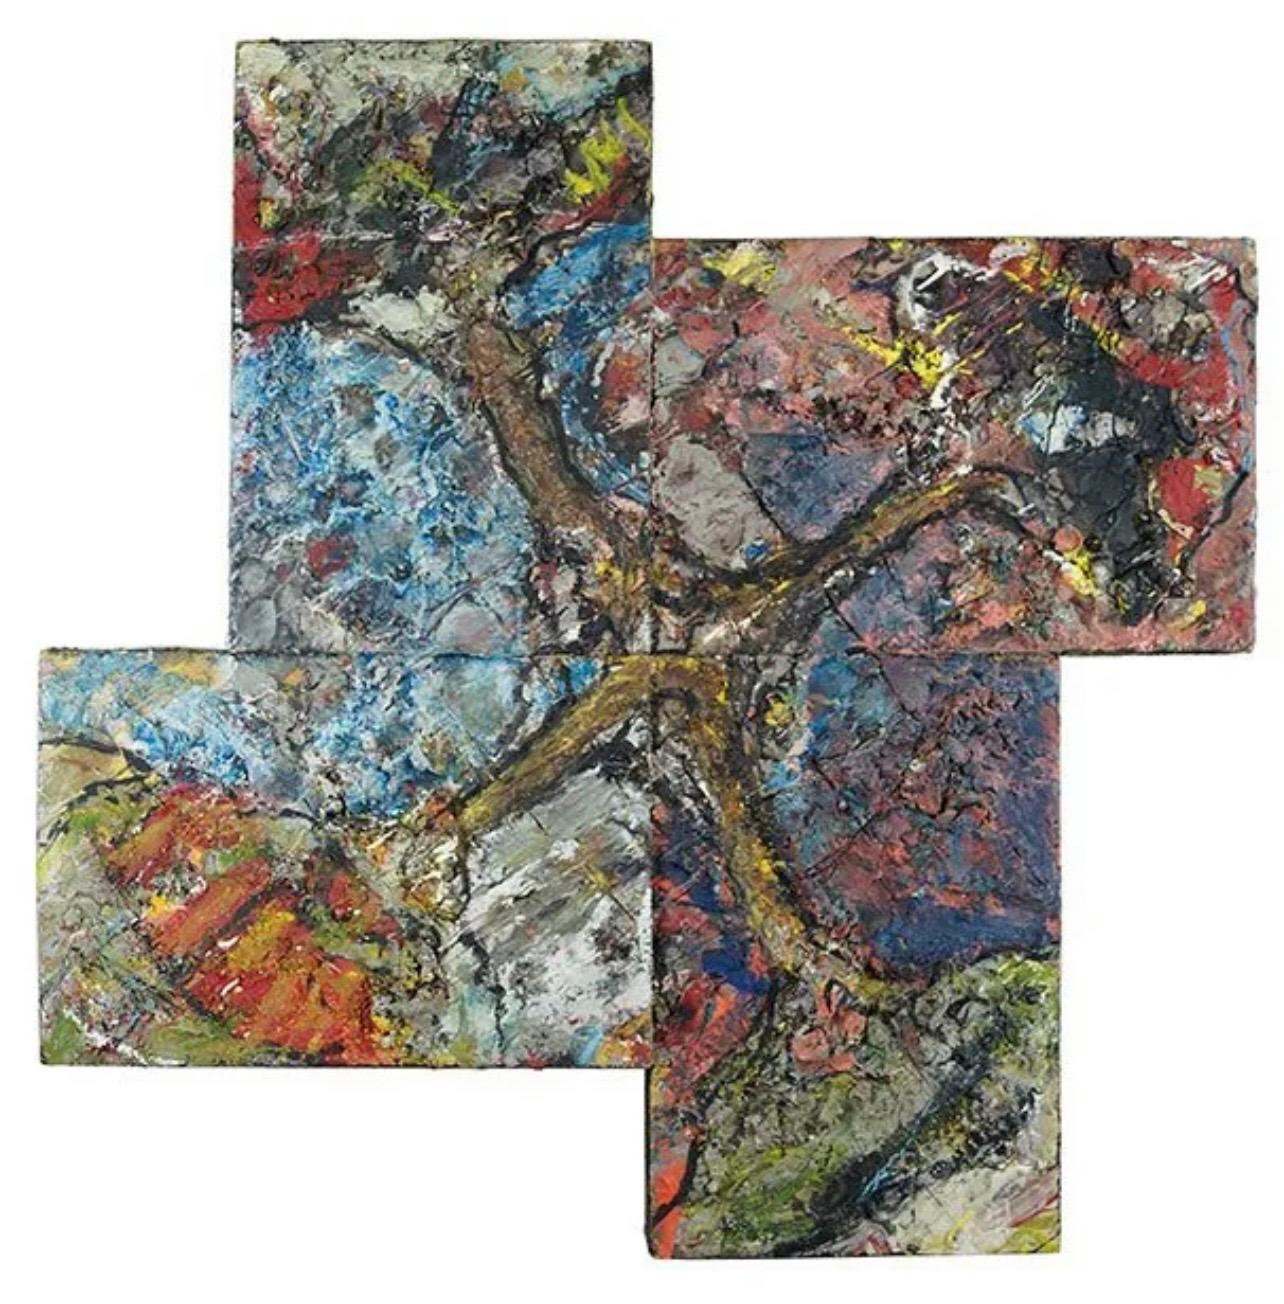 Grande peinture à l'encaustique expressionniste abstraite de Michael David exposée au musée